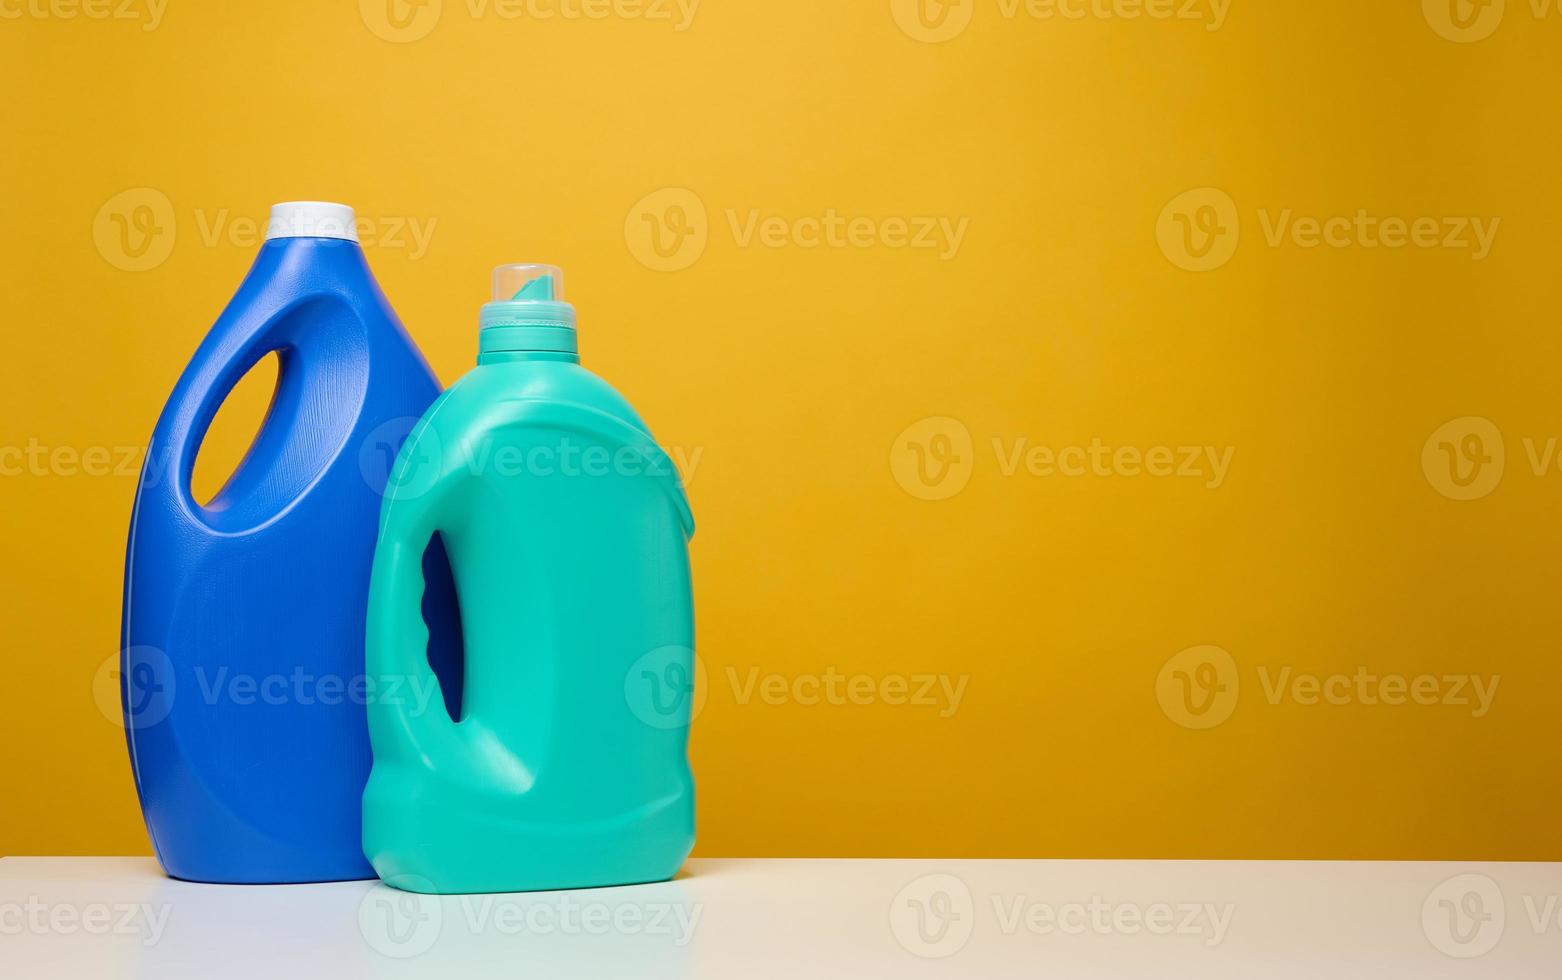 plastad blå stor flaskor med flytande rengöringsmedel stå på en vit tabell, gul bakgrund foto